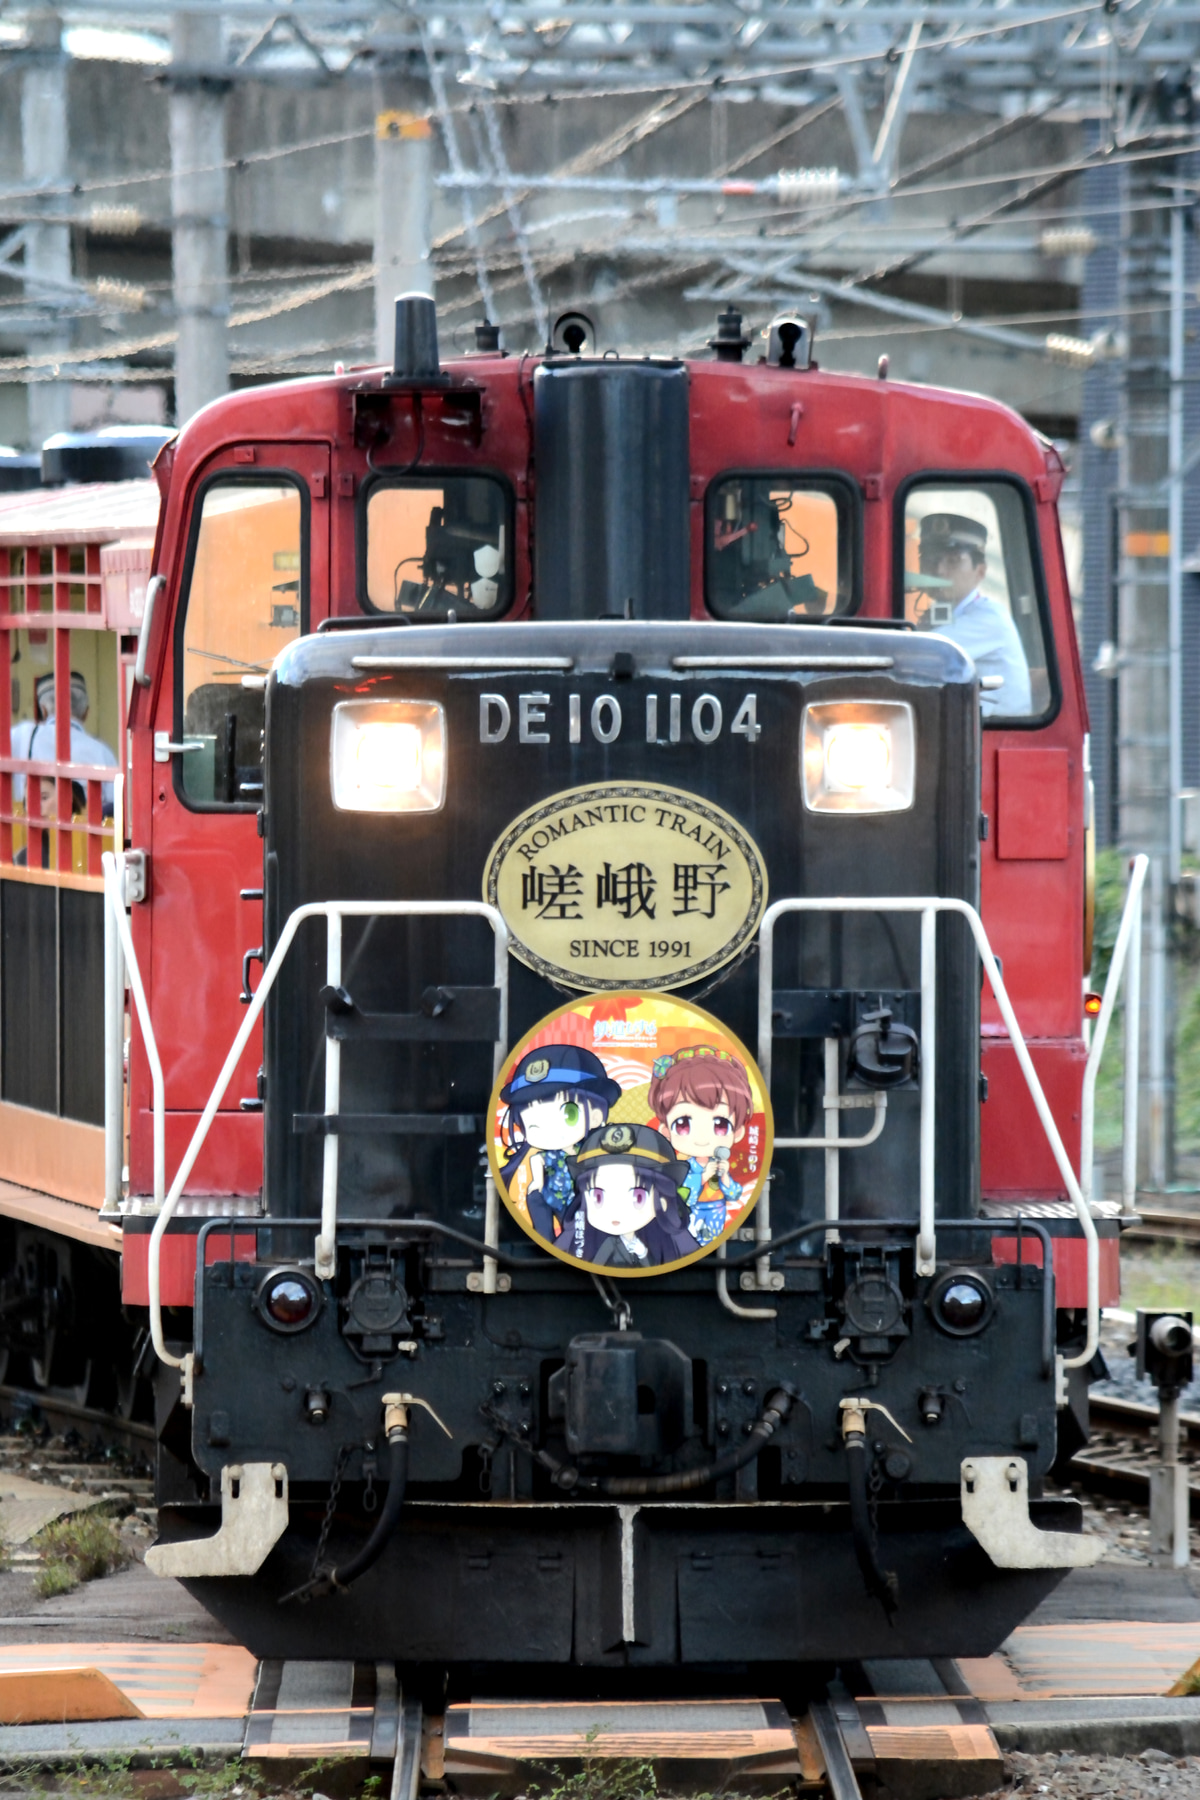 嵯峨野観光鉄道  DE10 1104